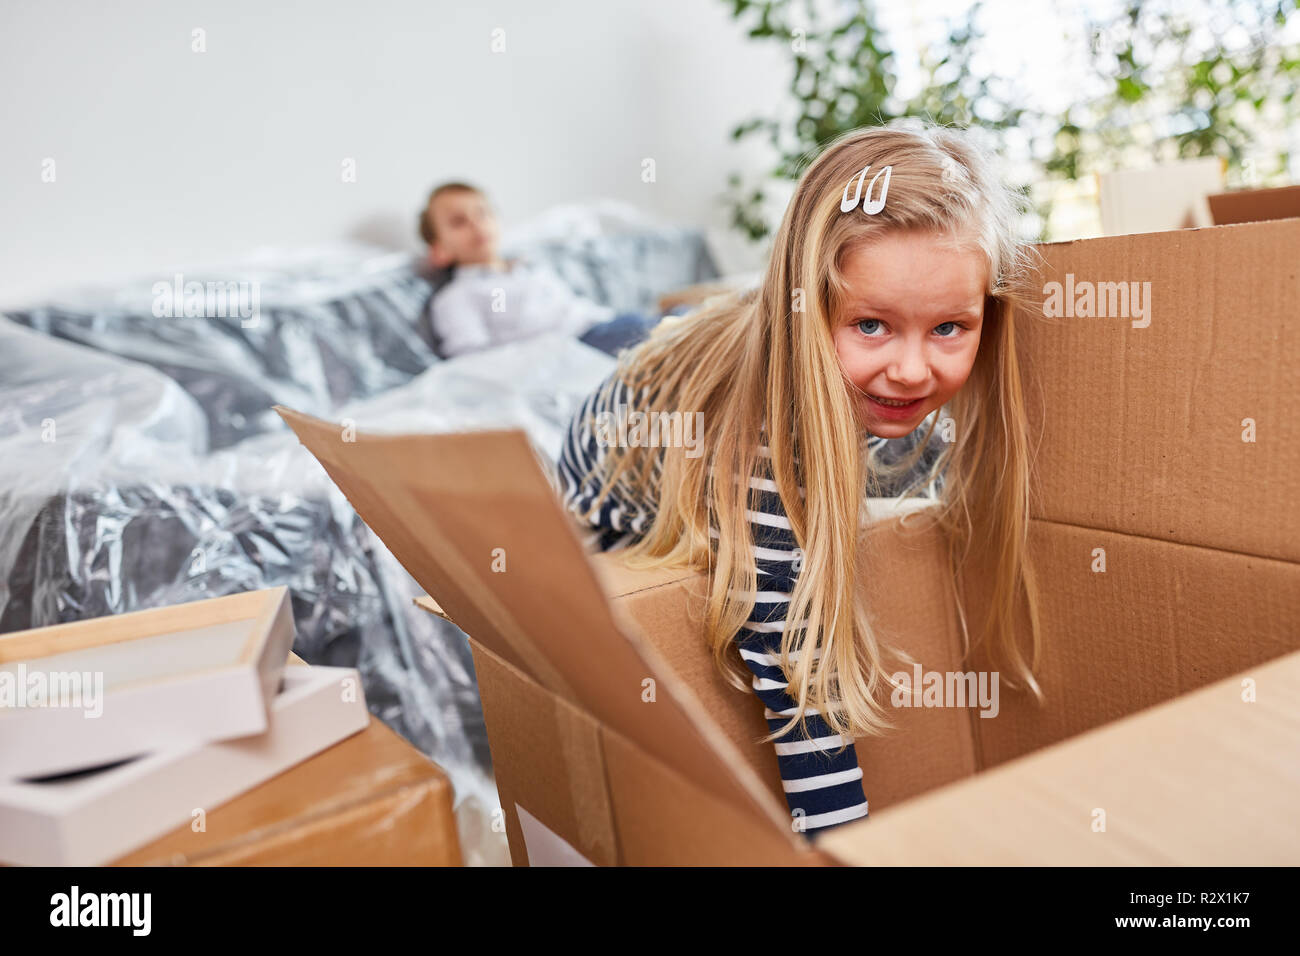 La ragazza estrae una scatola di movimentazione e aiuta con il passaggio alla nuova casa Foto Stock